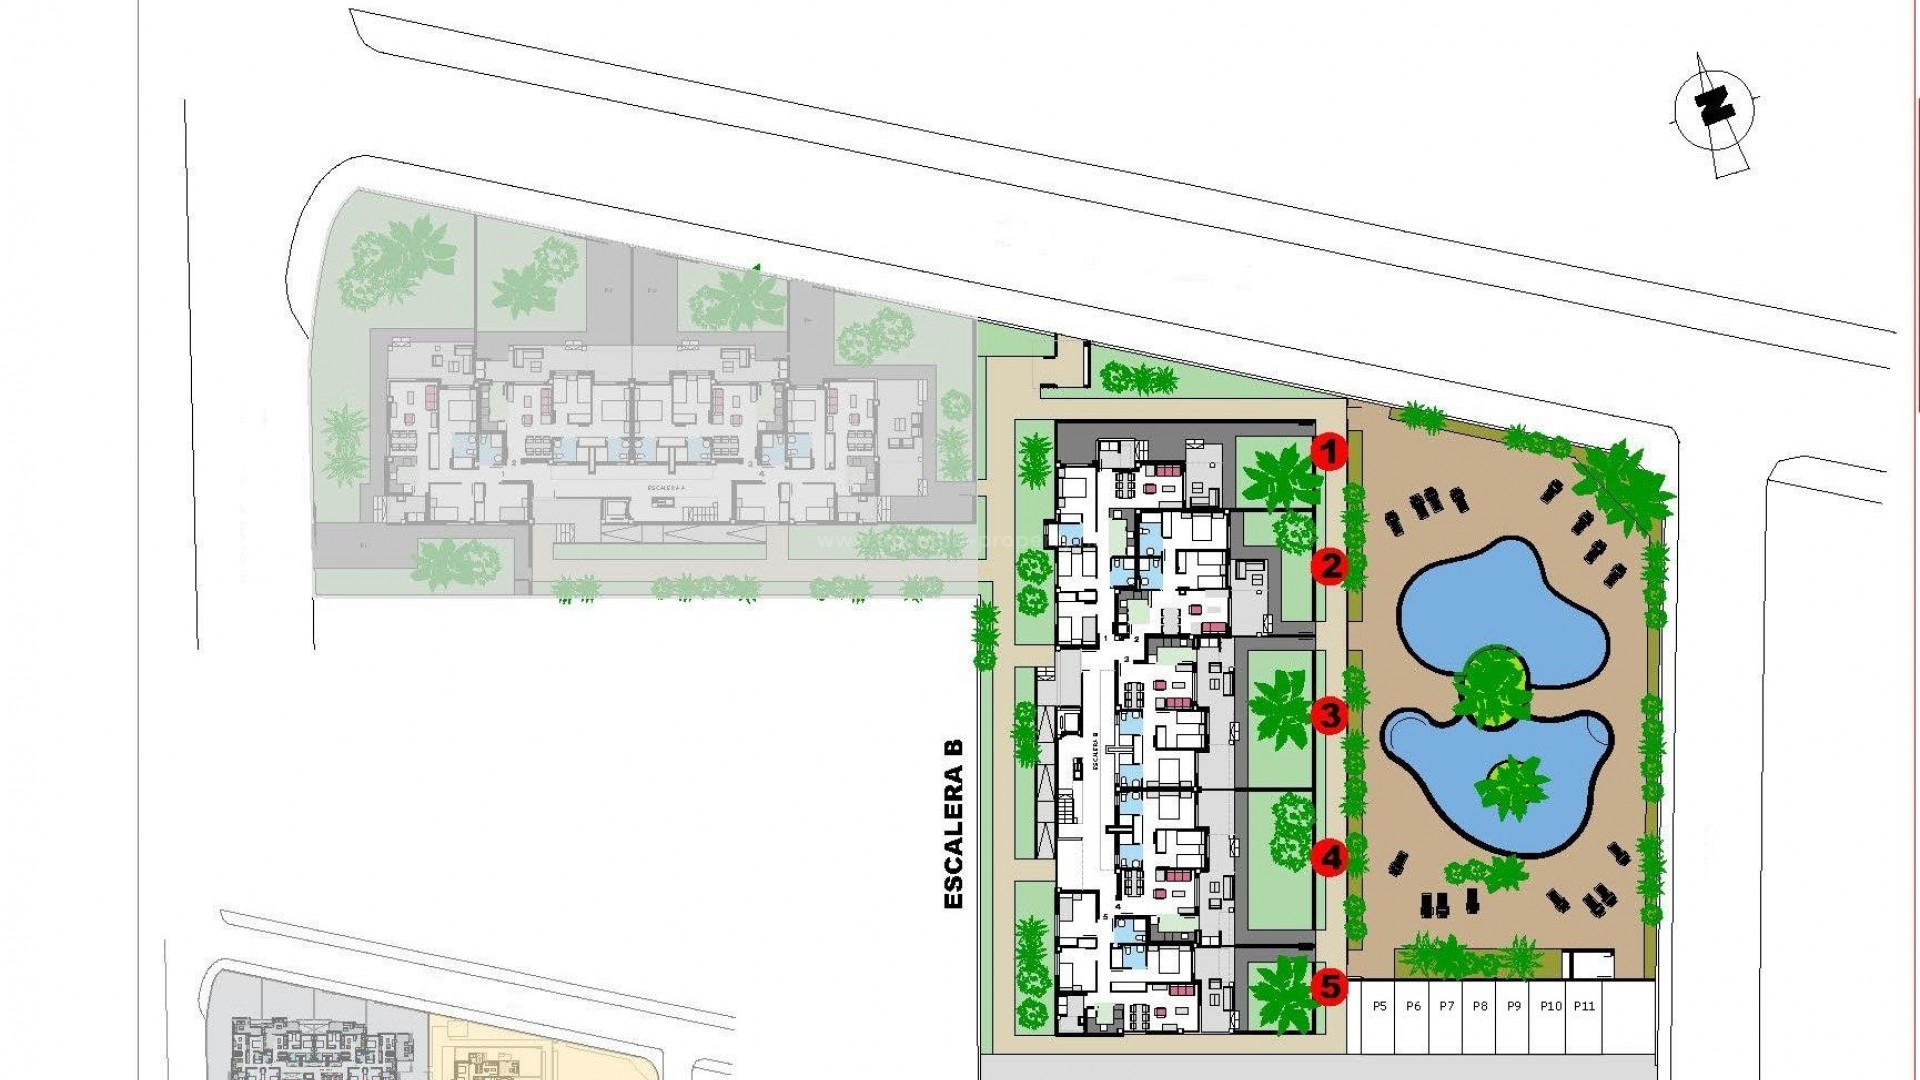 29 nye leiligheter i Denia, 2/3 soverom, 2 bad, felles basseng, hage eller solarium,parkering,uslåelig beliggenhet 100 meter fra strande, 2 km til sentrum